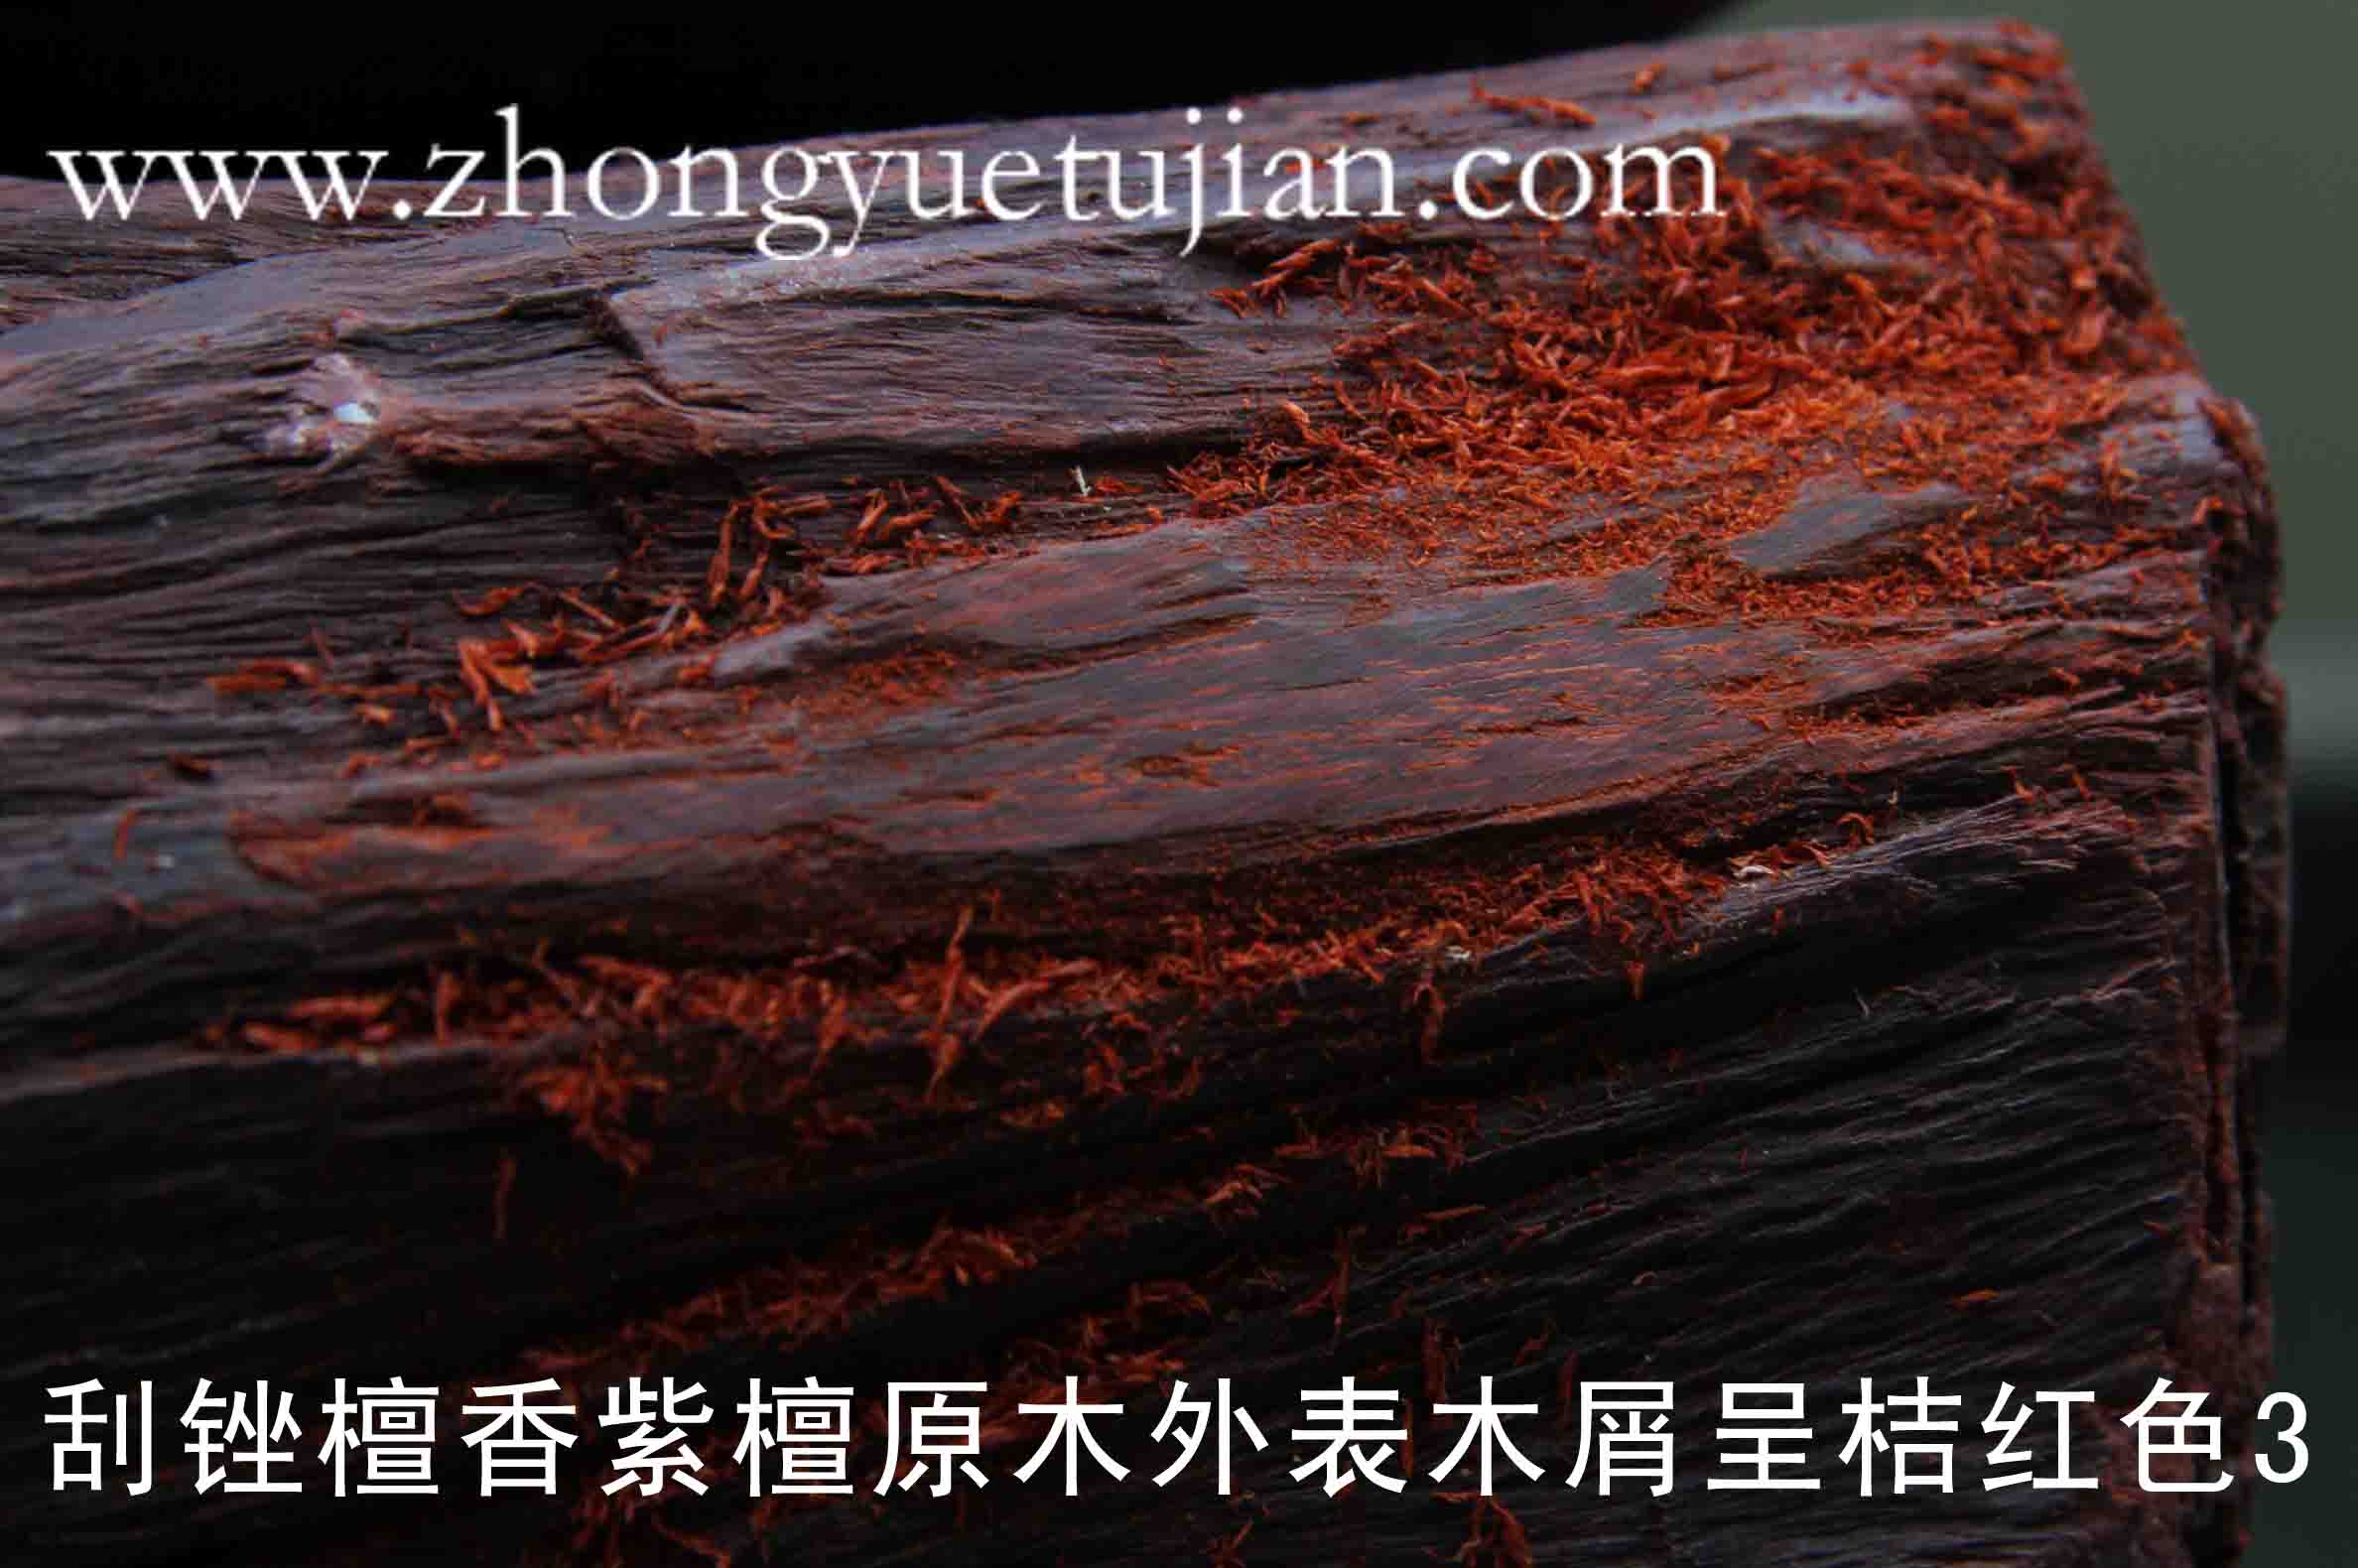 001(24)刮锉檀香紫檀原木外表木屑呈桔红色3.jpg